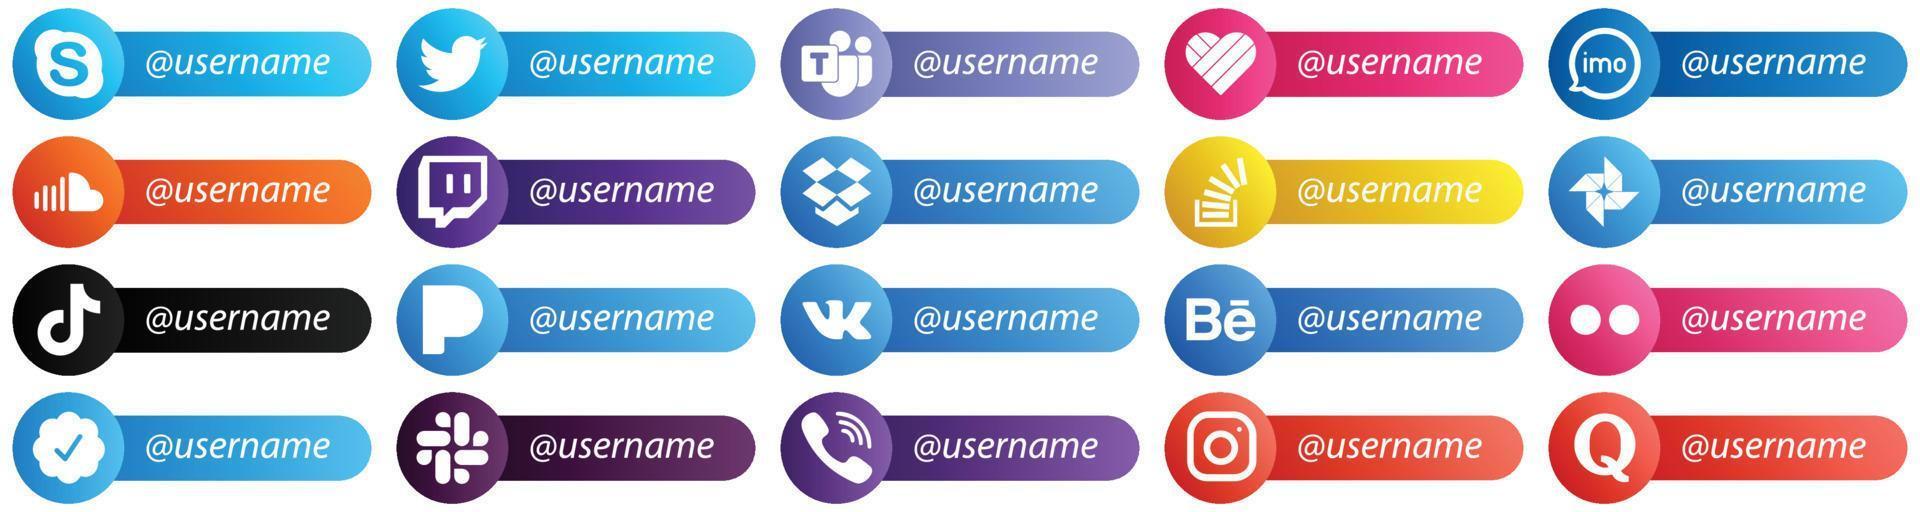 Följ mig social nätverk plattform ikoner med plats för Användarnamn 20 packa sådan som fråga. Dropbox. audio. rycka till och ljud ikoner. fullt anpassningsbar och hög kvalitet vektor